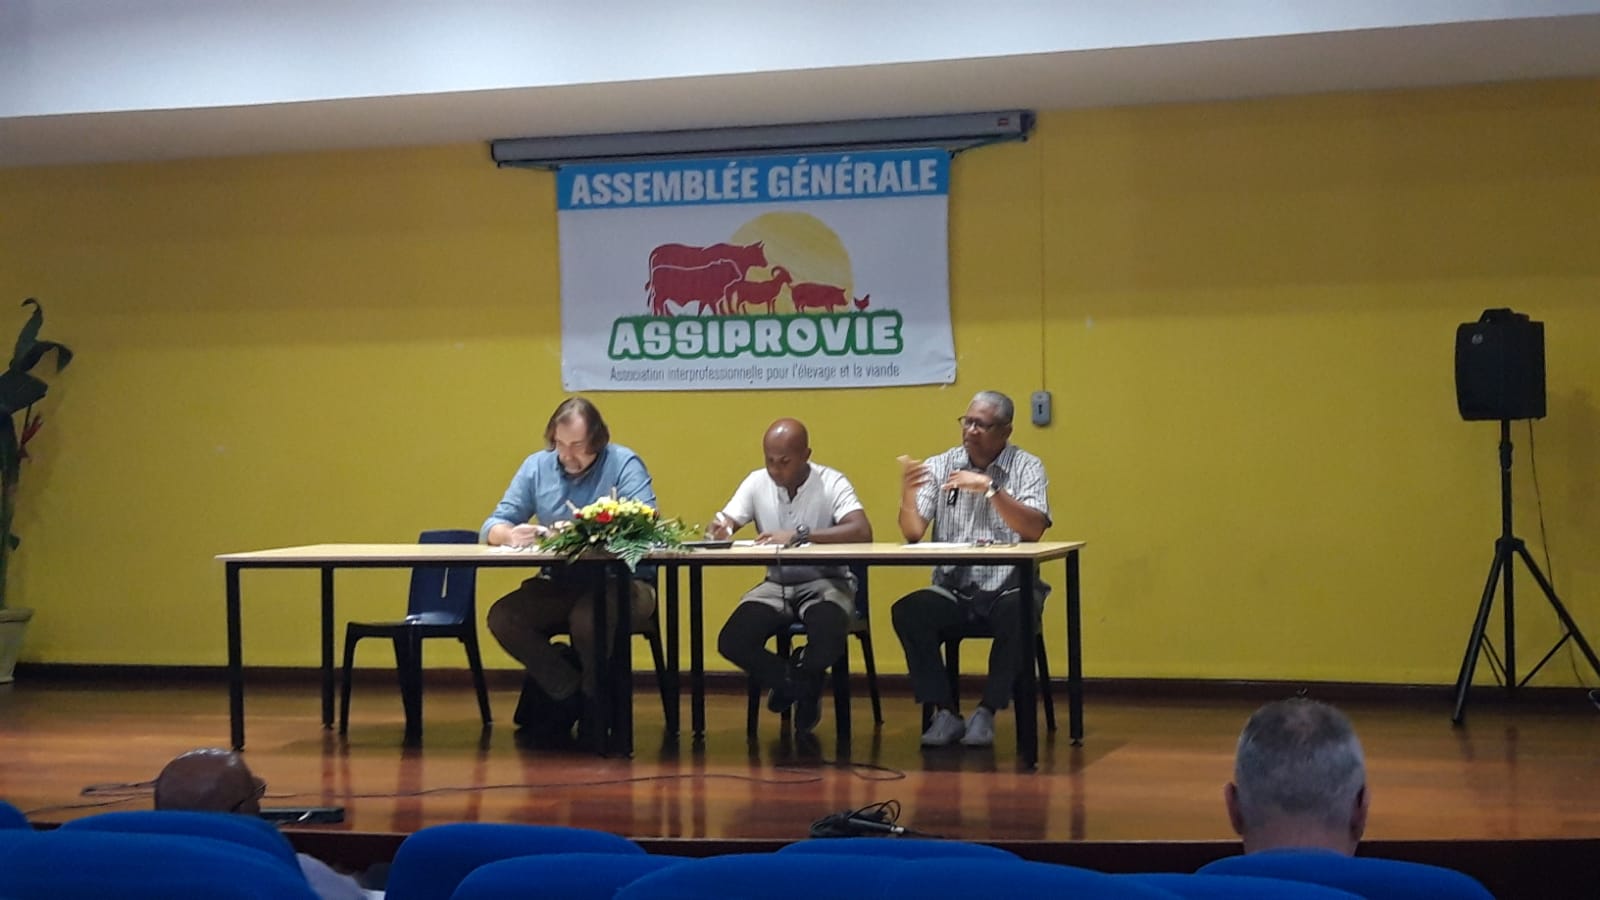     L’ASSIPROVIE veut relancer la filière de l’élevage et de la viande en Guadeloupe

